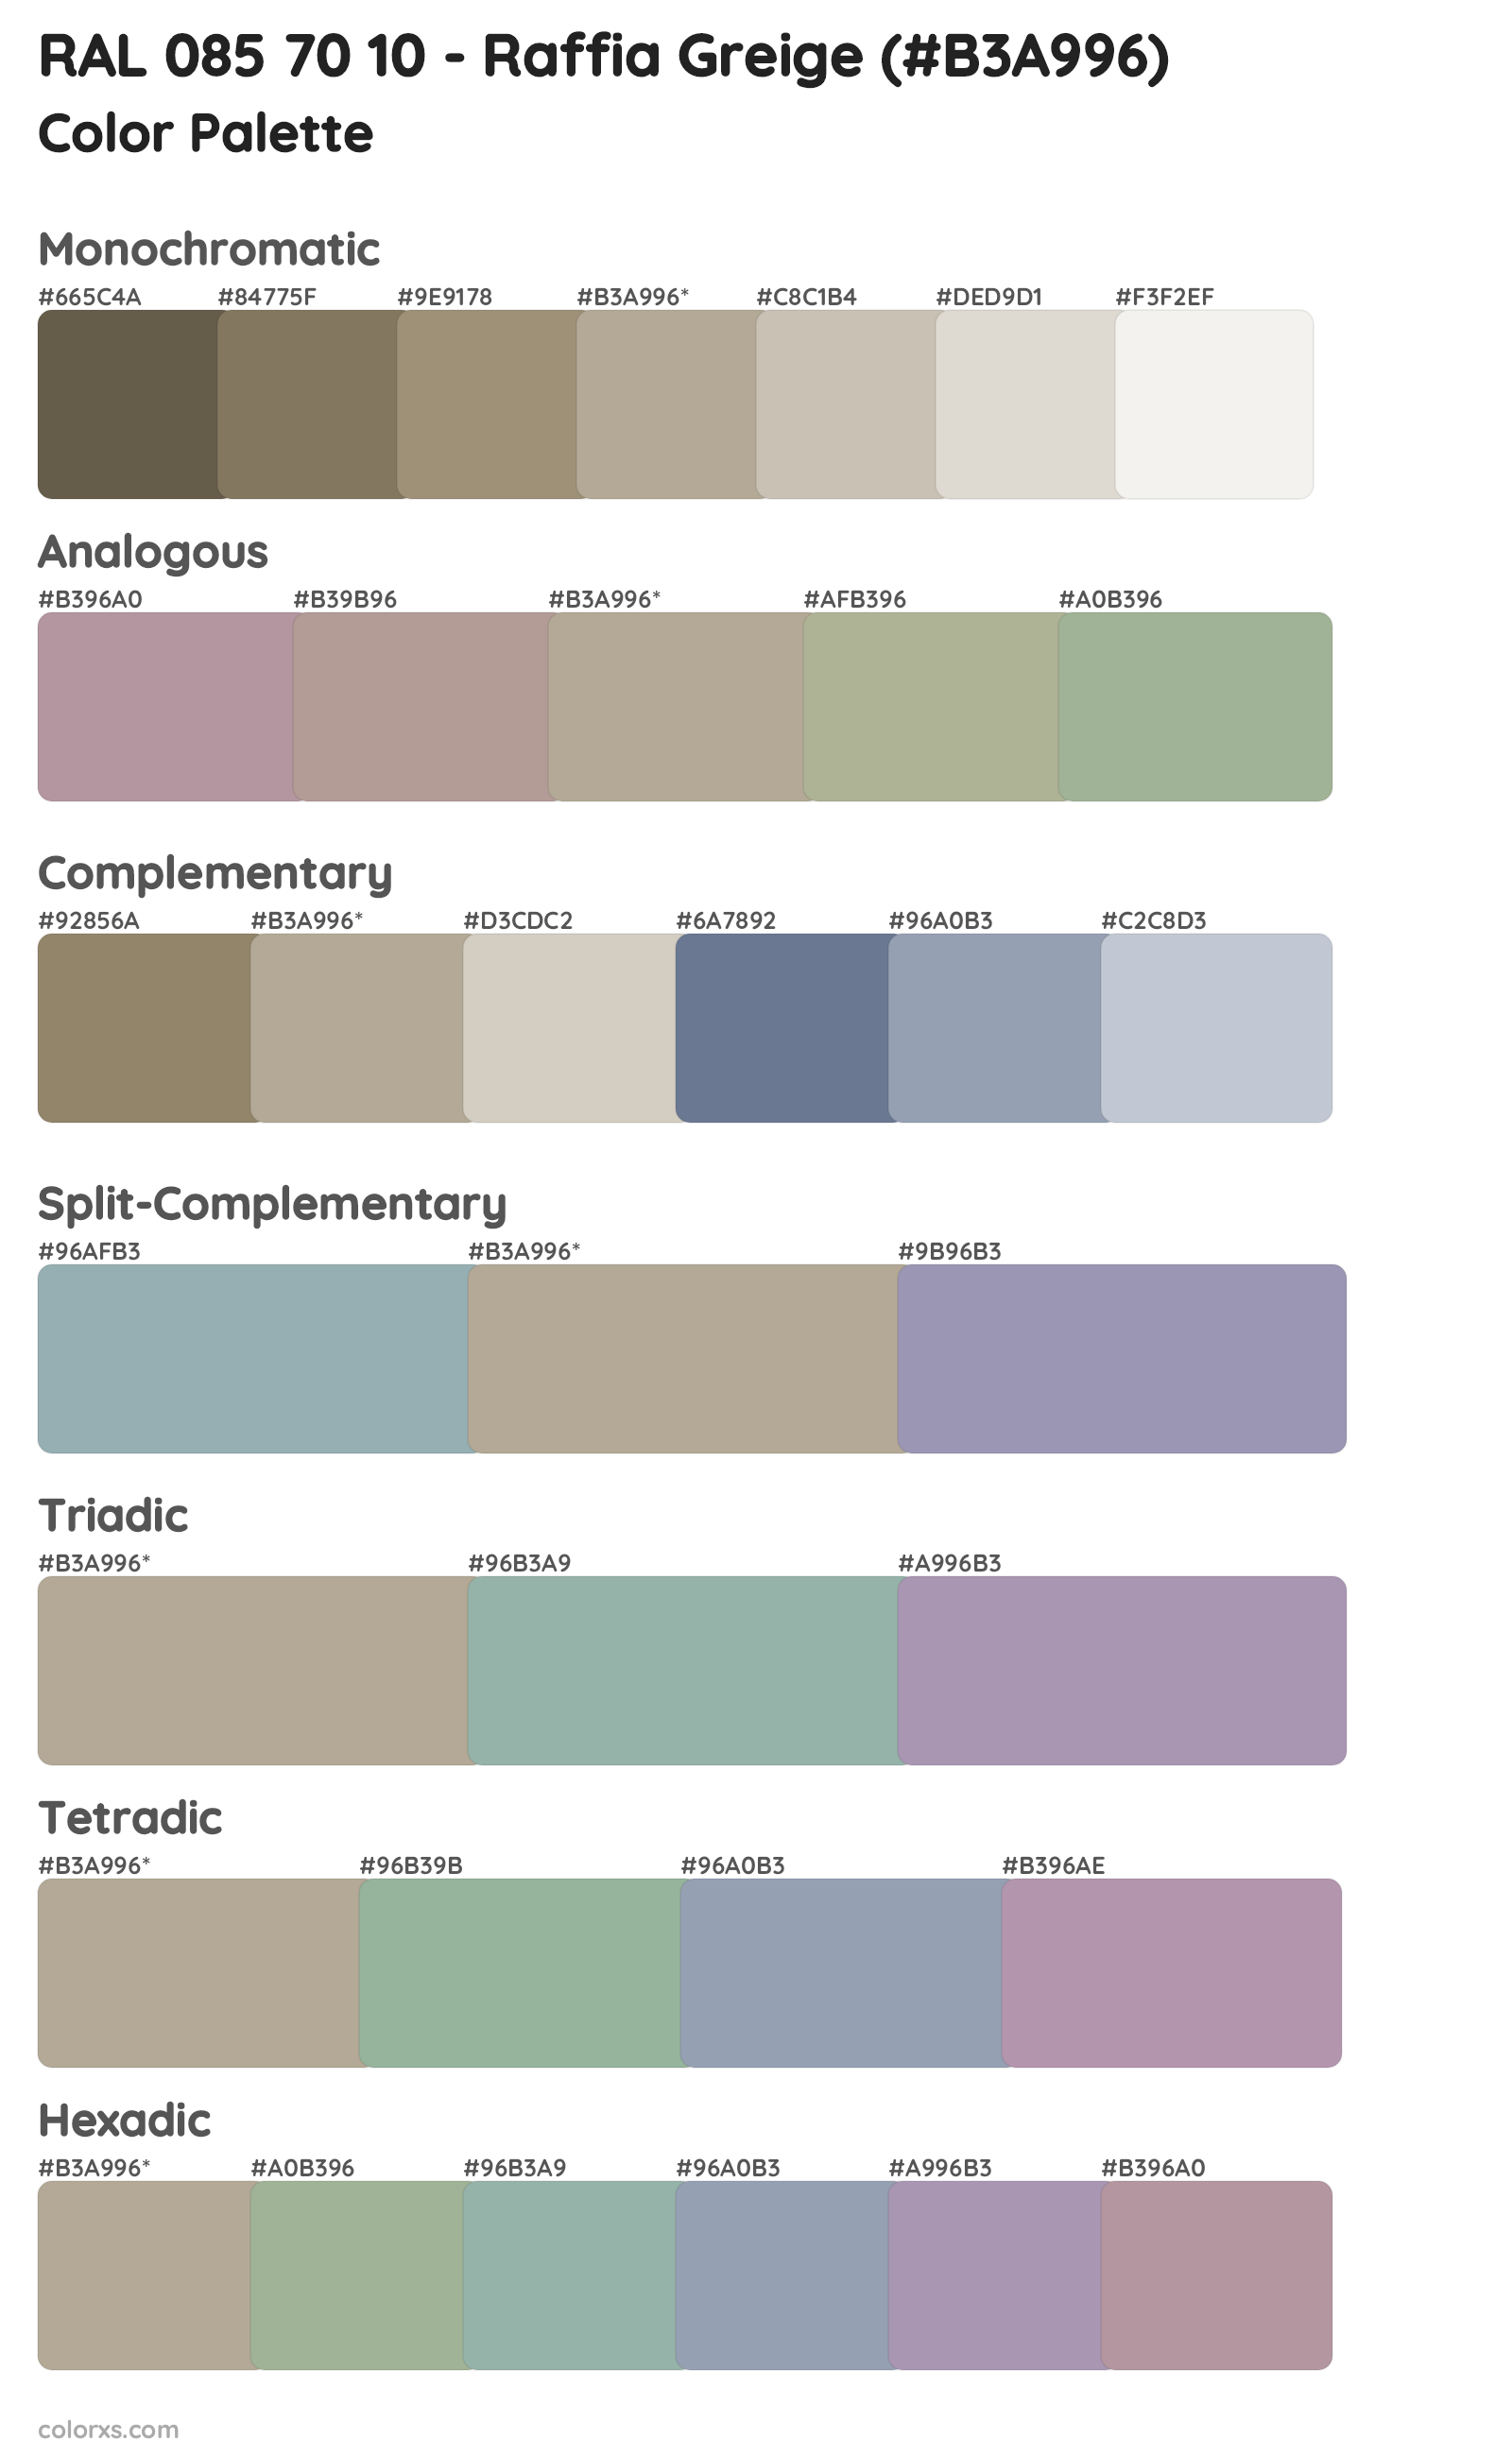 RAL 085 70 10 - Raffia Greige Color Scheme Palettes